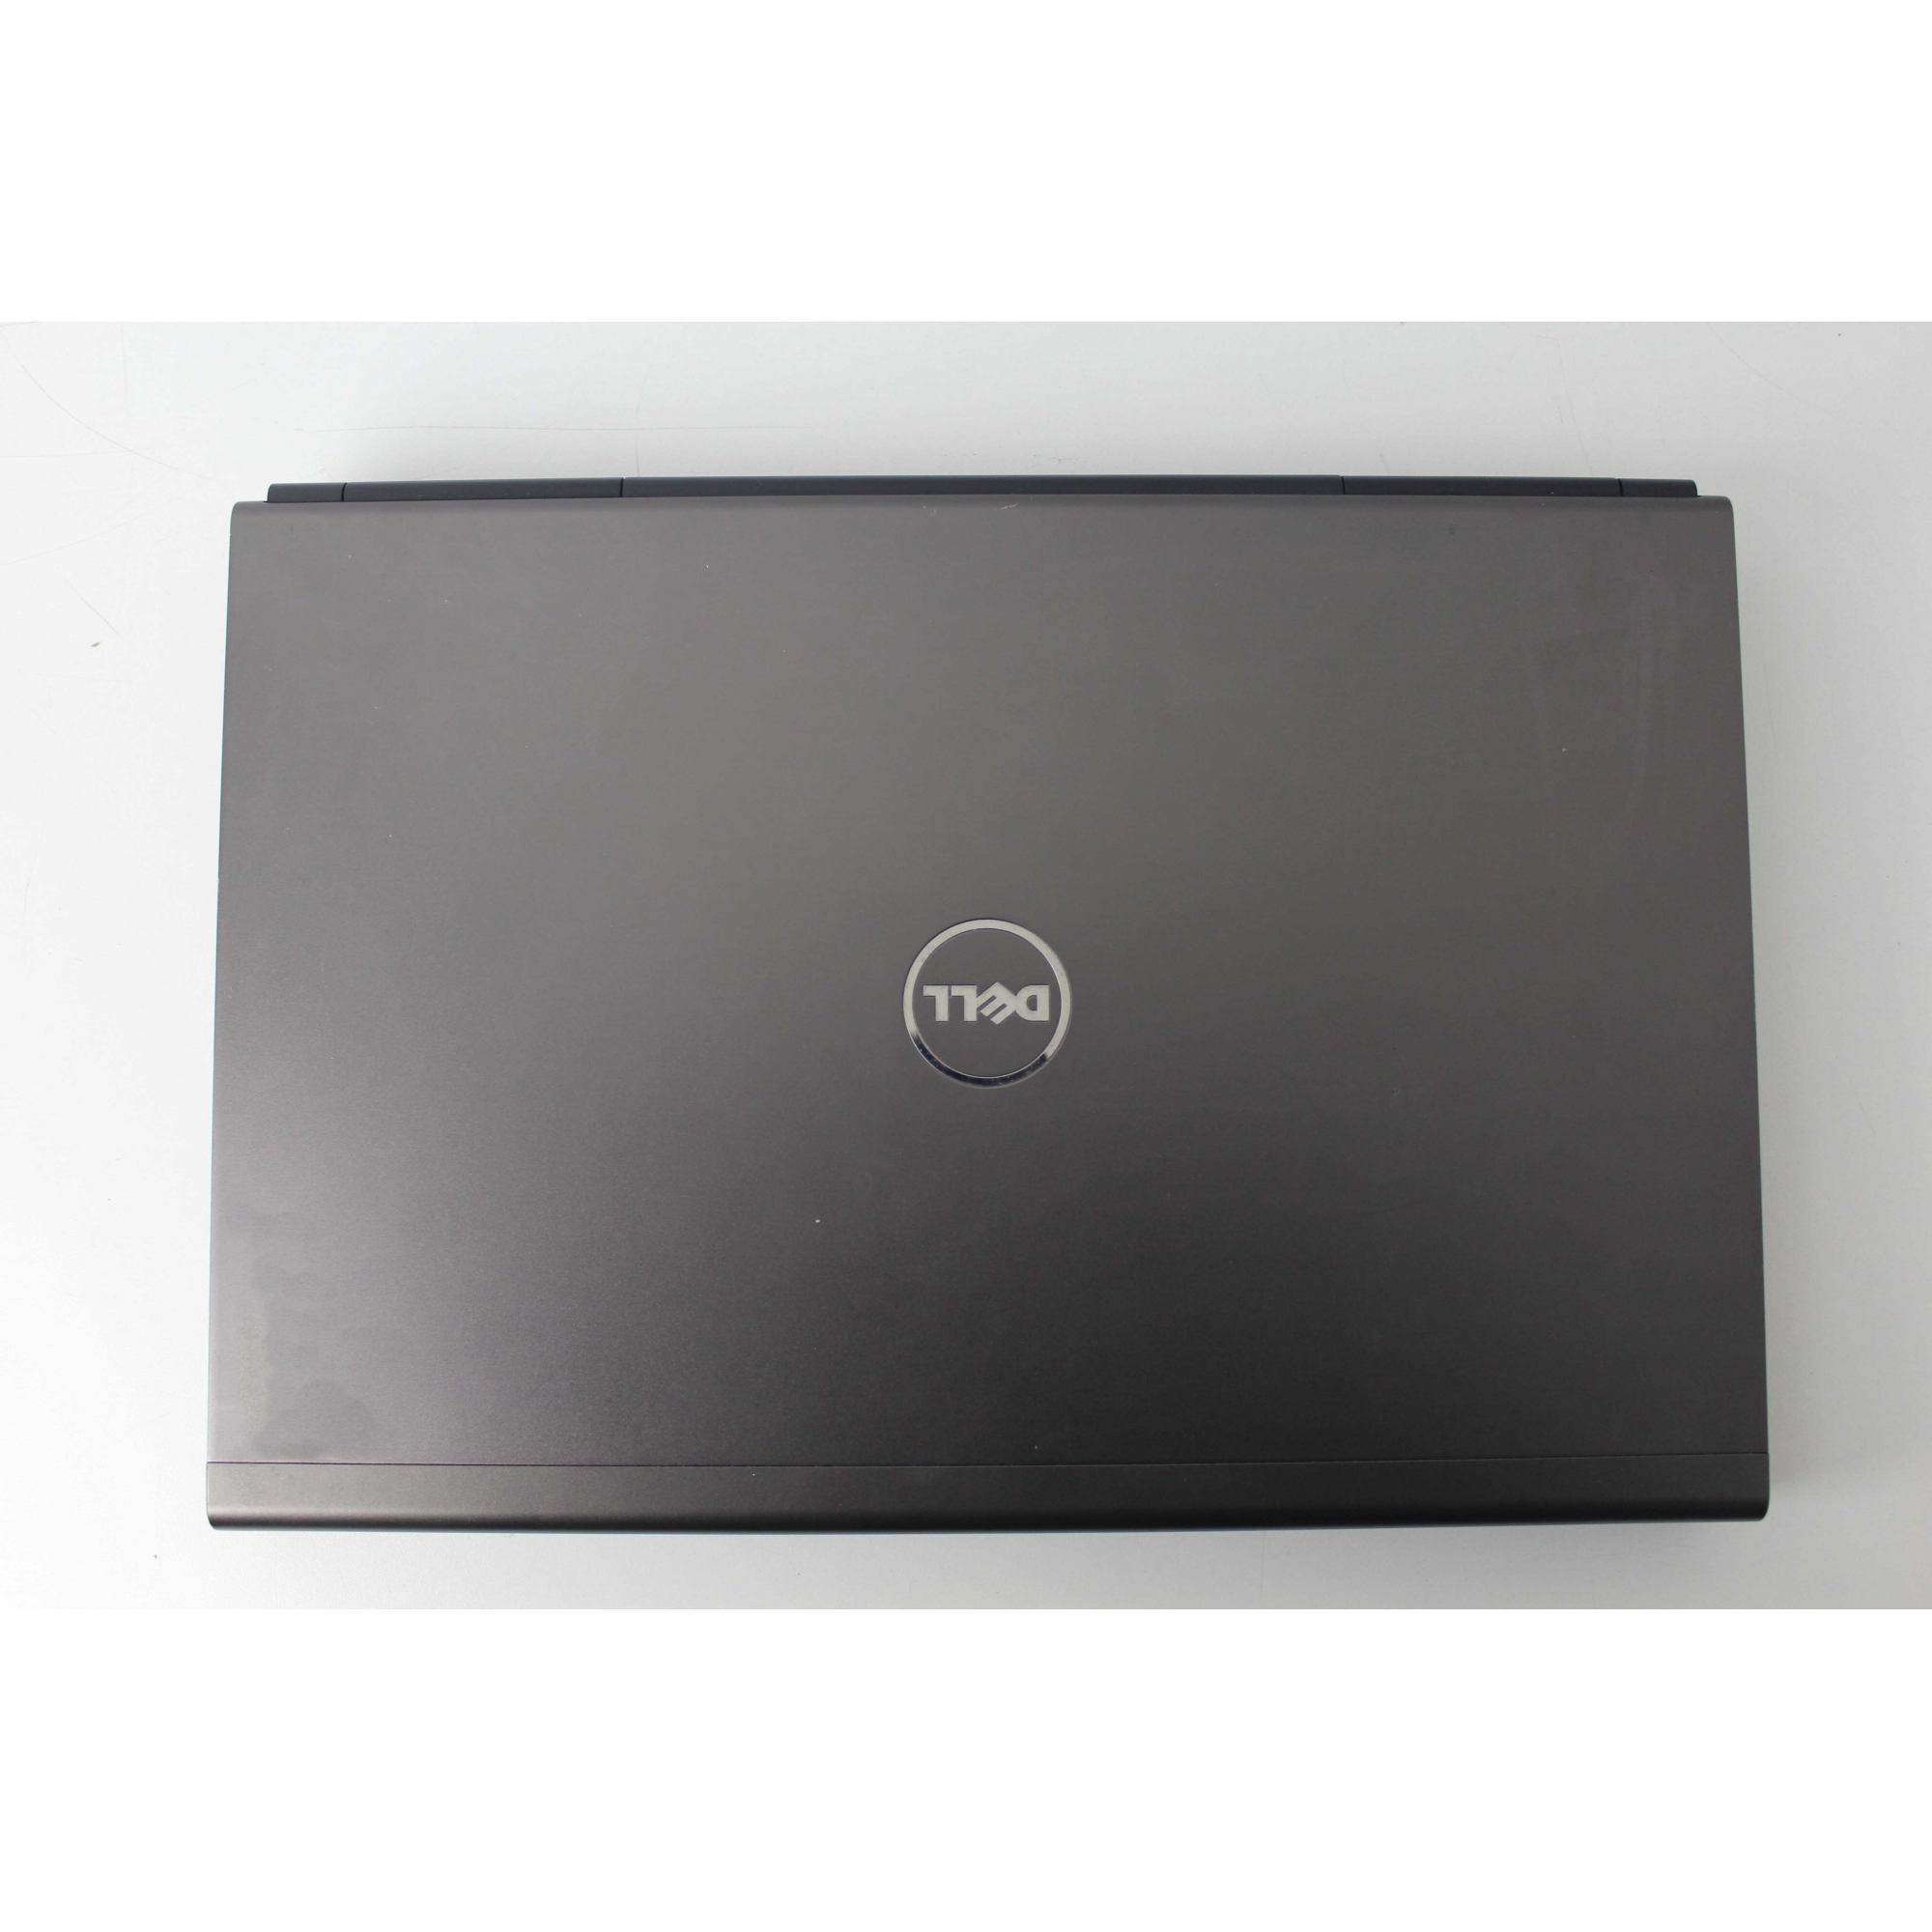 Notebook Dell Precision M4800 15,6" Core i7 2.8Ghz 8GB HD-1TB + 2GB Dedicada + Alphanumérico - NÃO ENVIAMOS